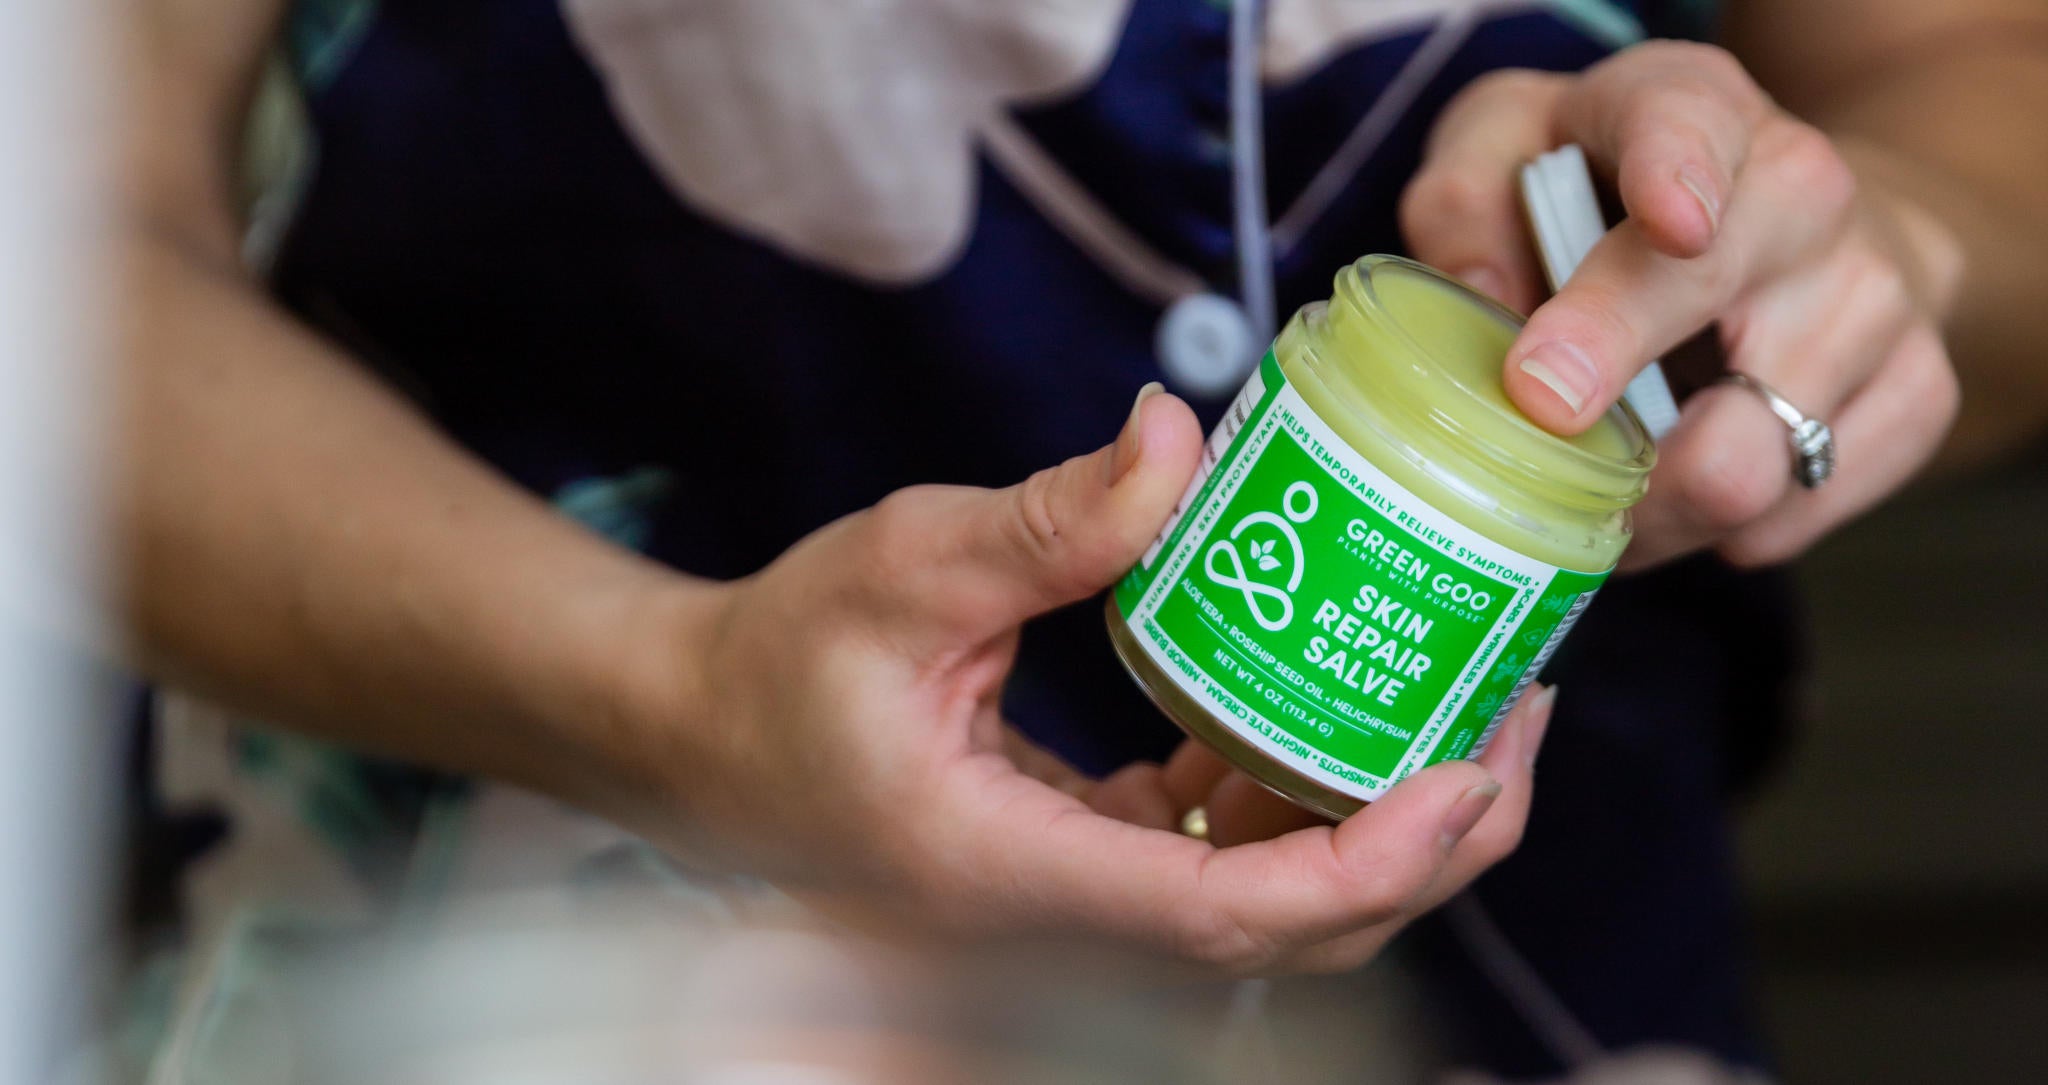 Green Goo's Skin Repair salve in a jar